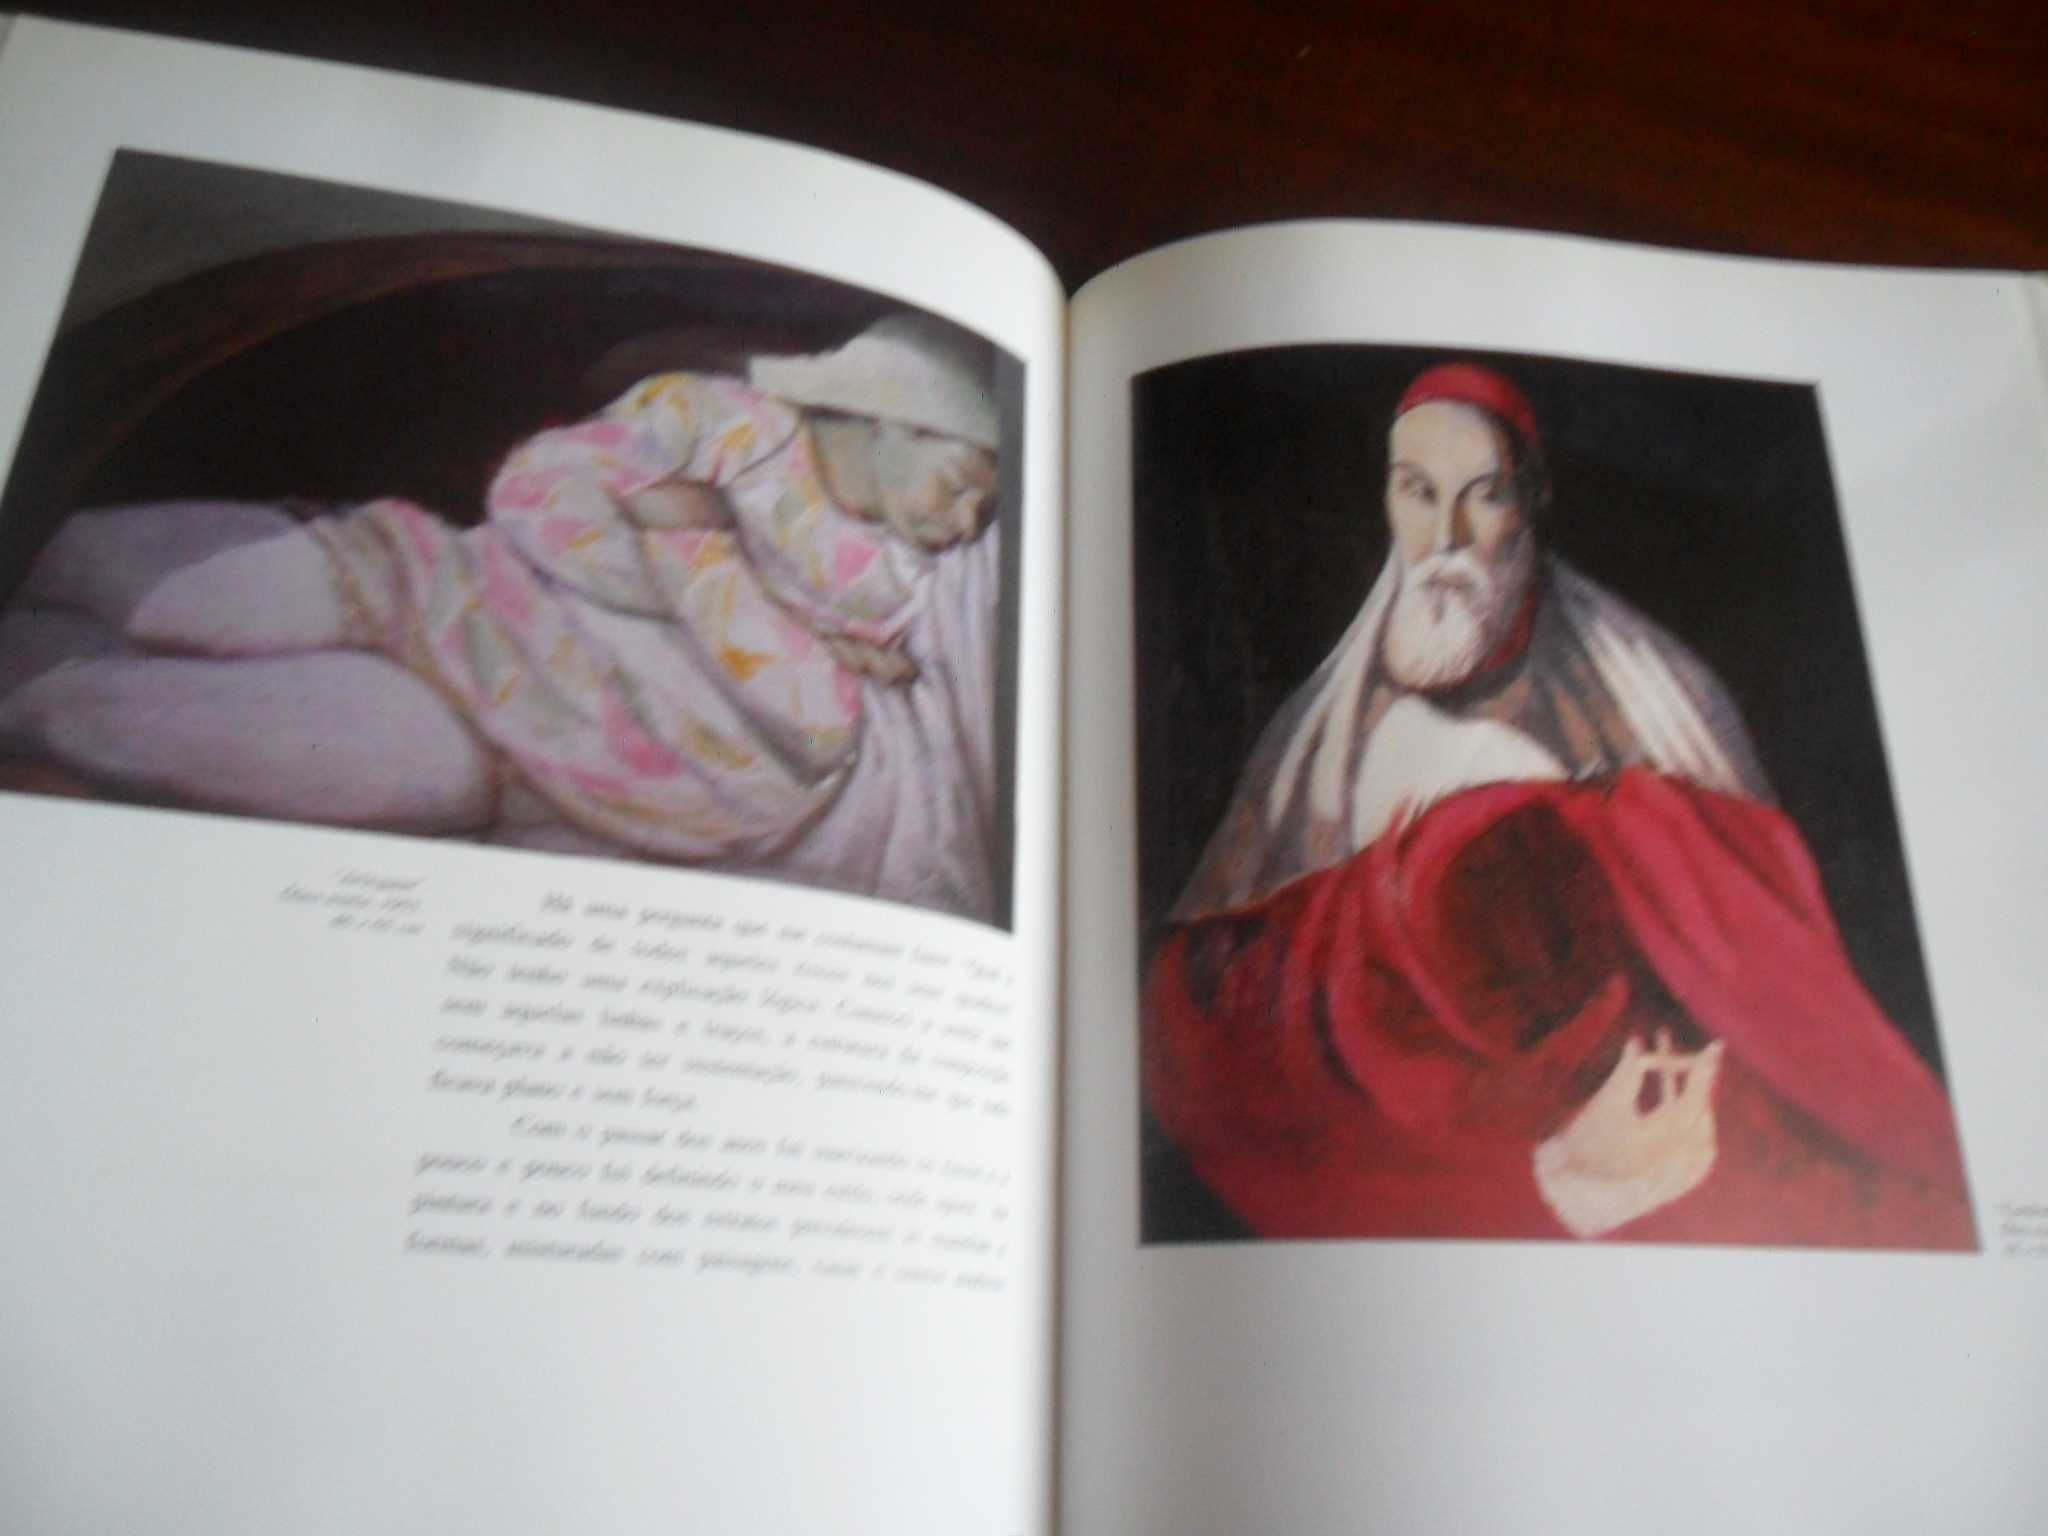 "Pedro Leitão - Vida e Obra" de Pedro Leitão - 1ª Edição de 1997